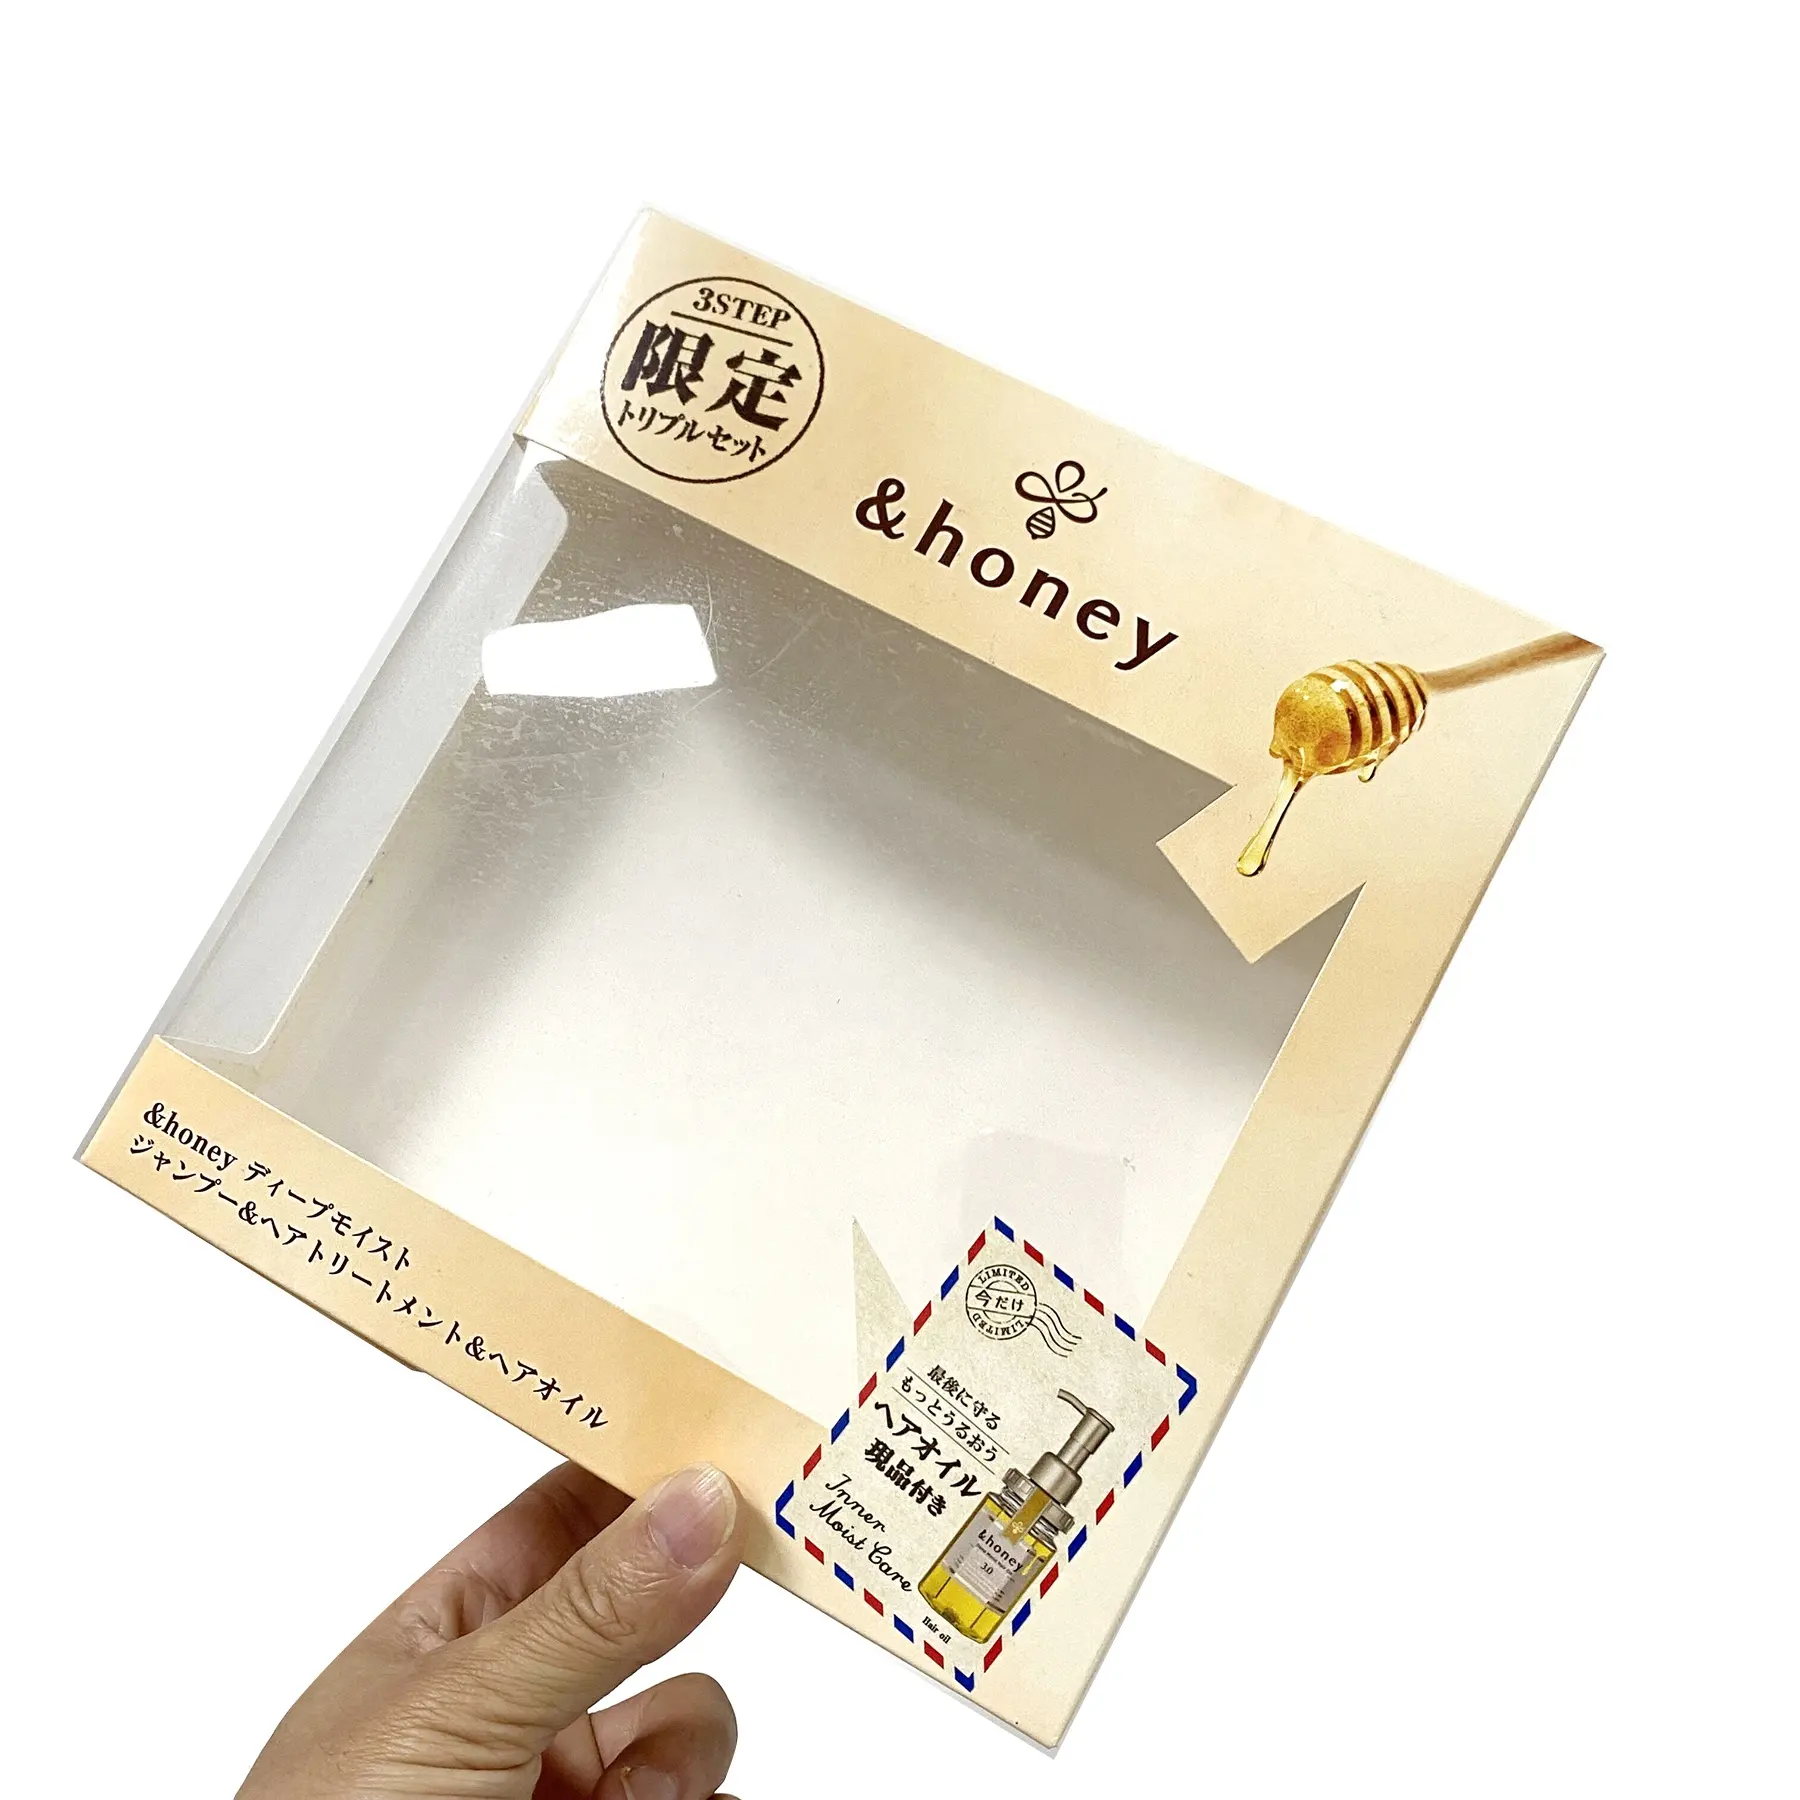 कस्टम रंगीन आर्ट कोटेड पेपर साफ़ पारदर्शी विंडो चार्जर विंडो केक बॉक्स और हैंडल प्रिंटिंग के साथ पैकेजिंग बॉक्स